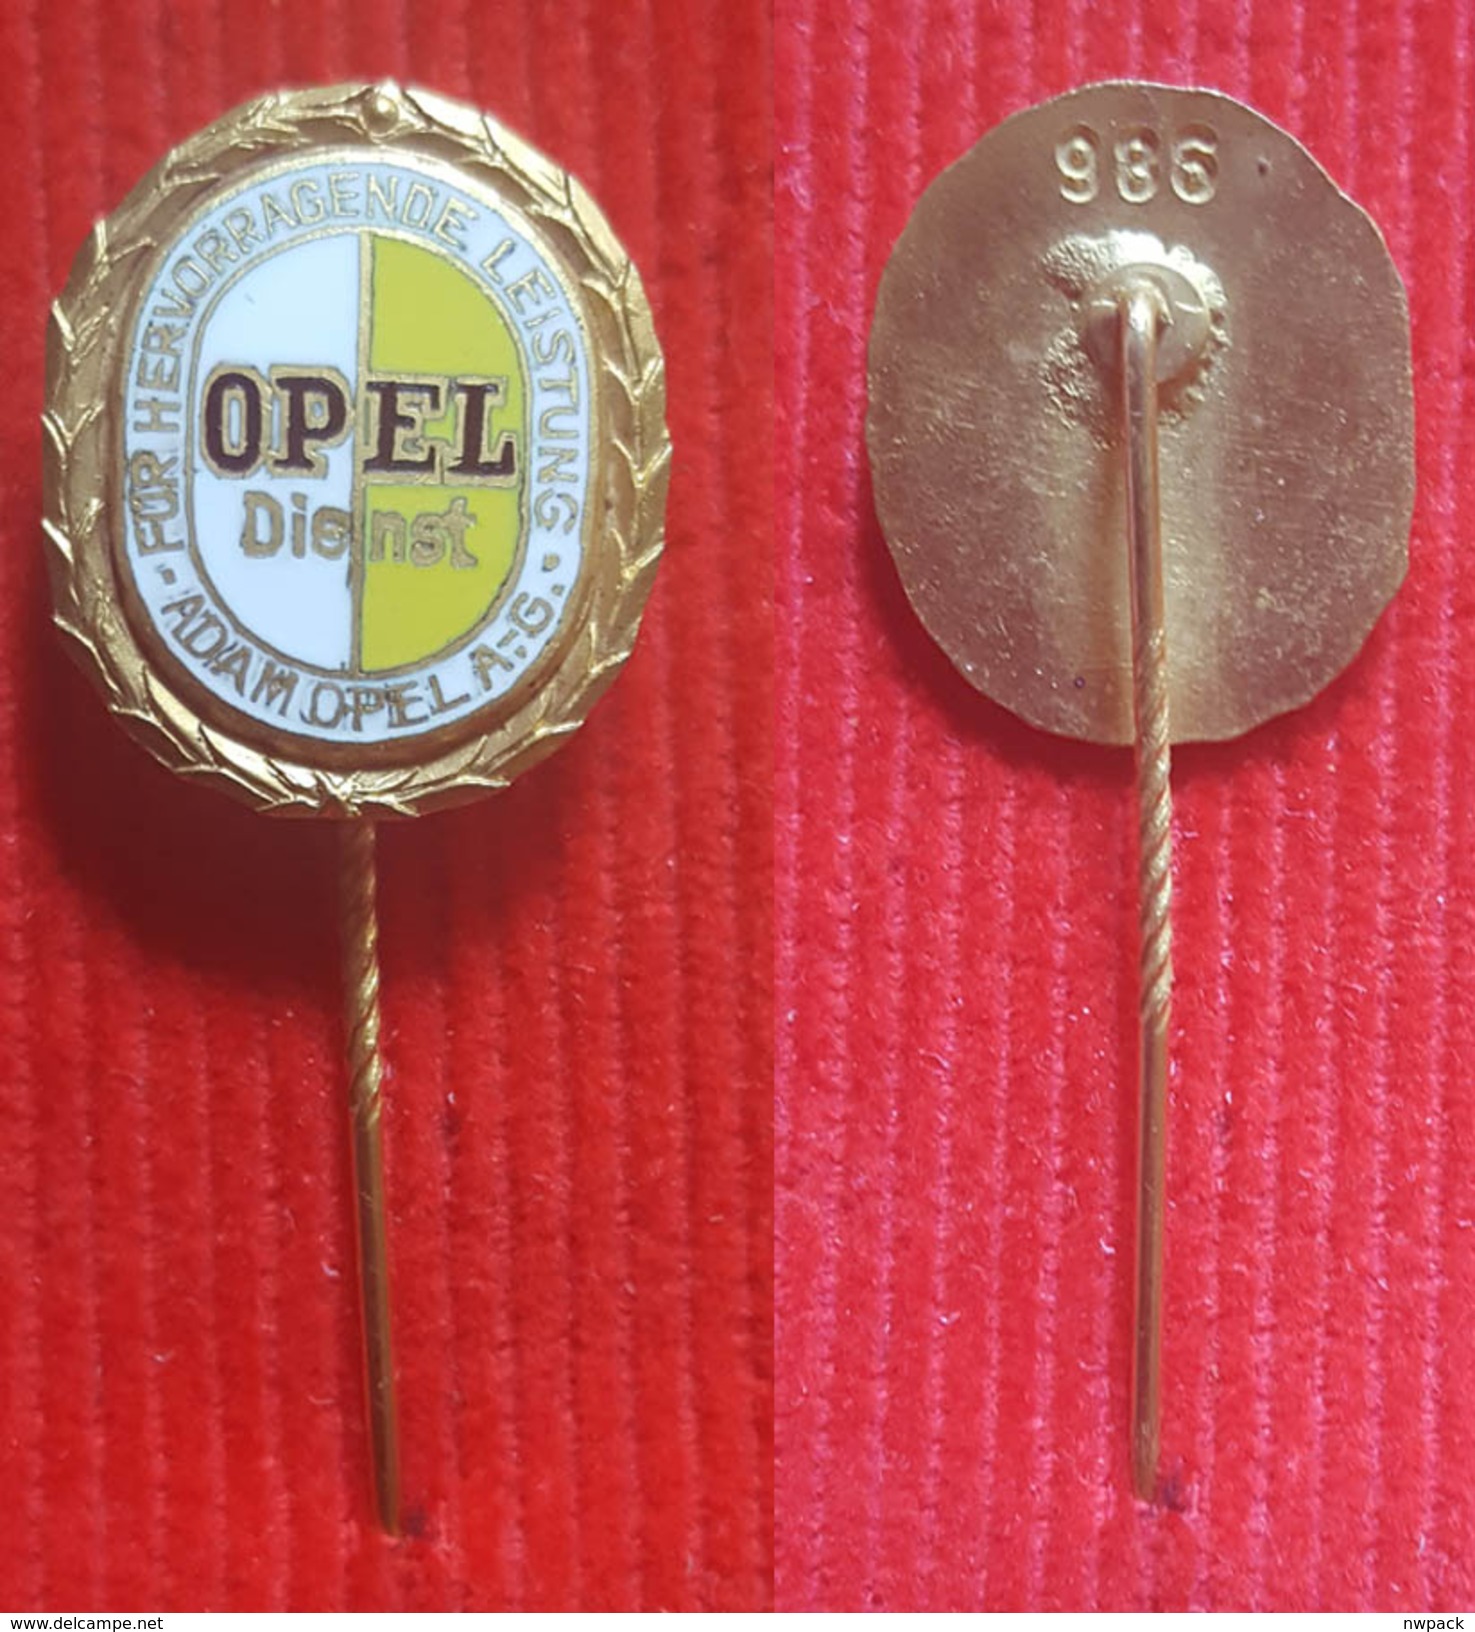 Car / Auto - OPEL Dienst - FOR HERVORRAGENDE LEISTUNG, ADAM OPEL, No. 986 - Badge / Pin  -  Abzeichen - Opel